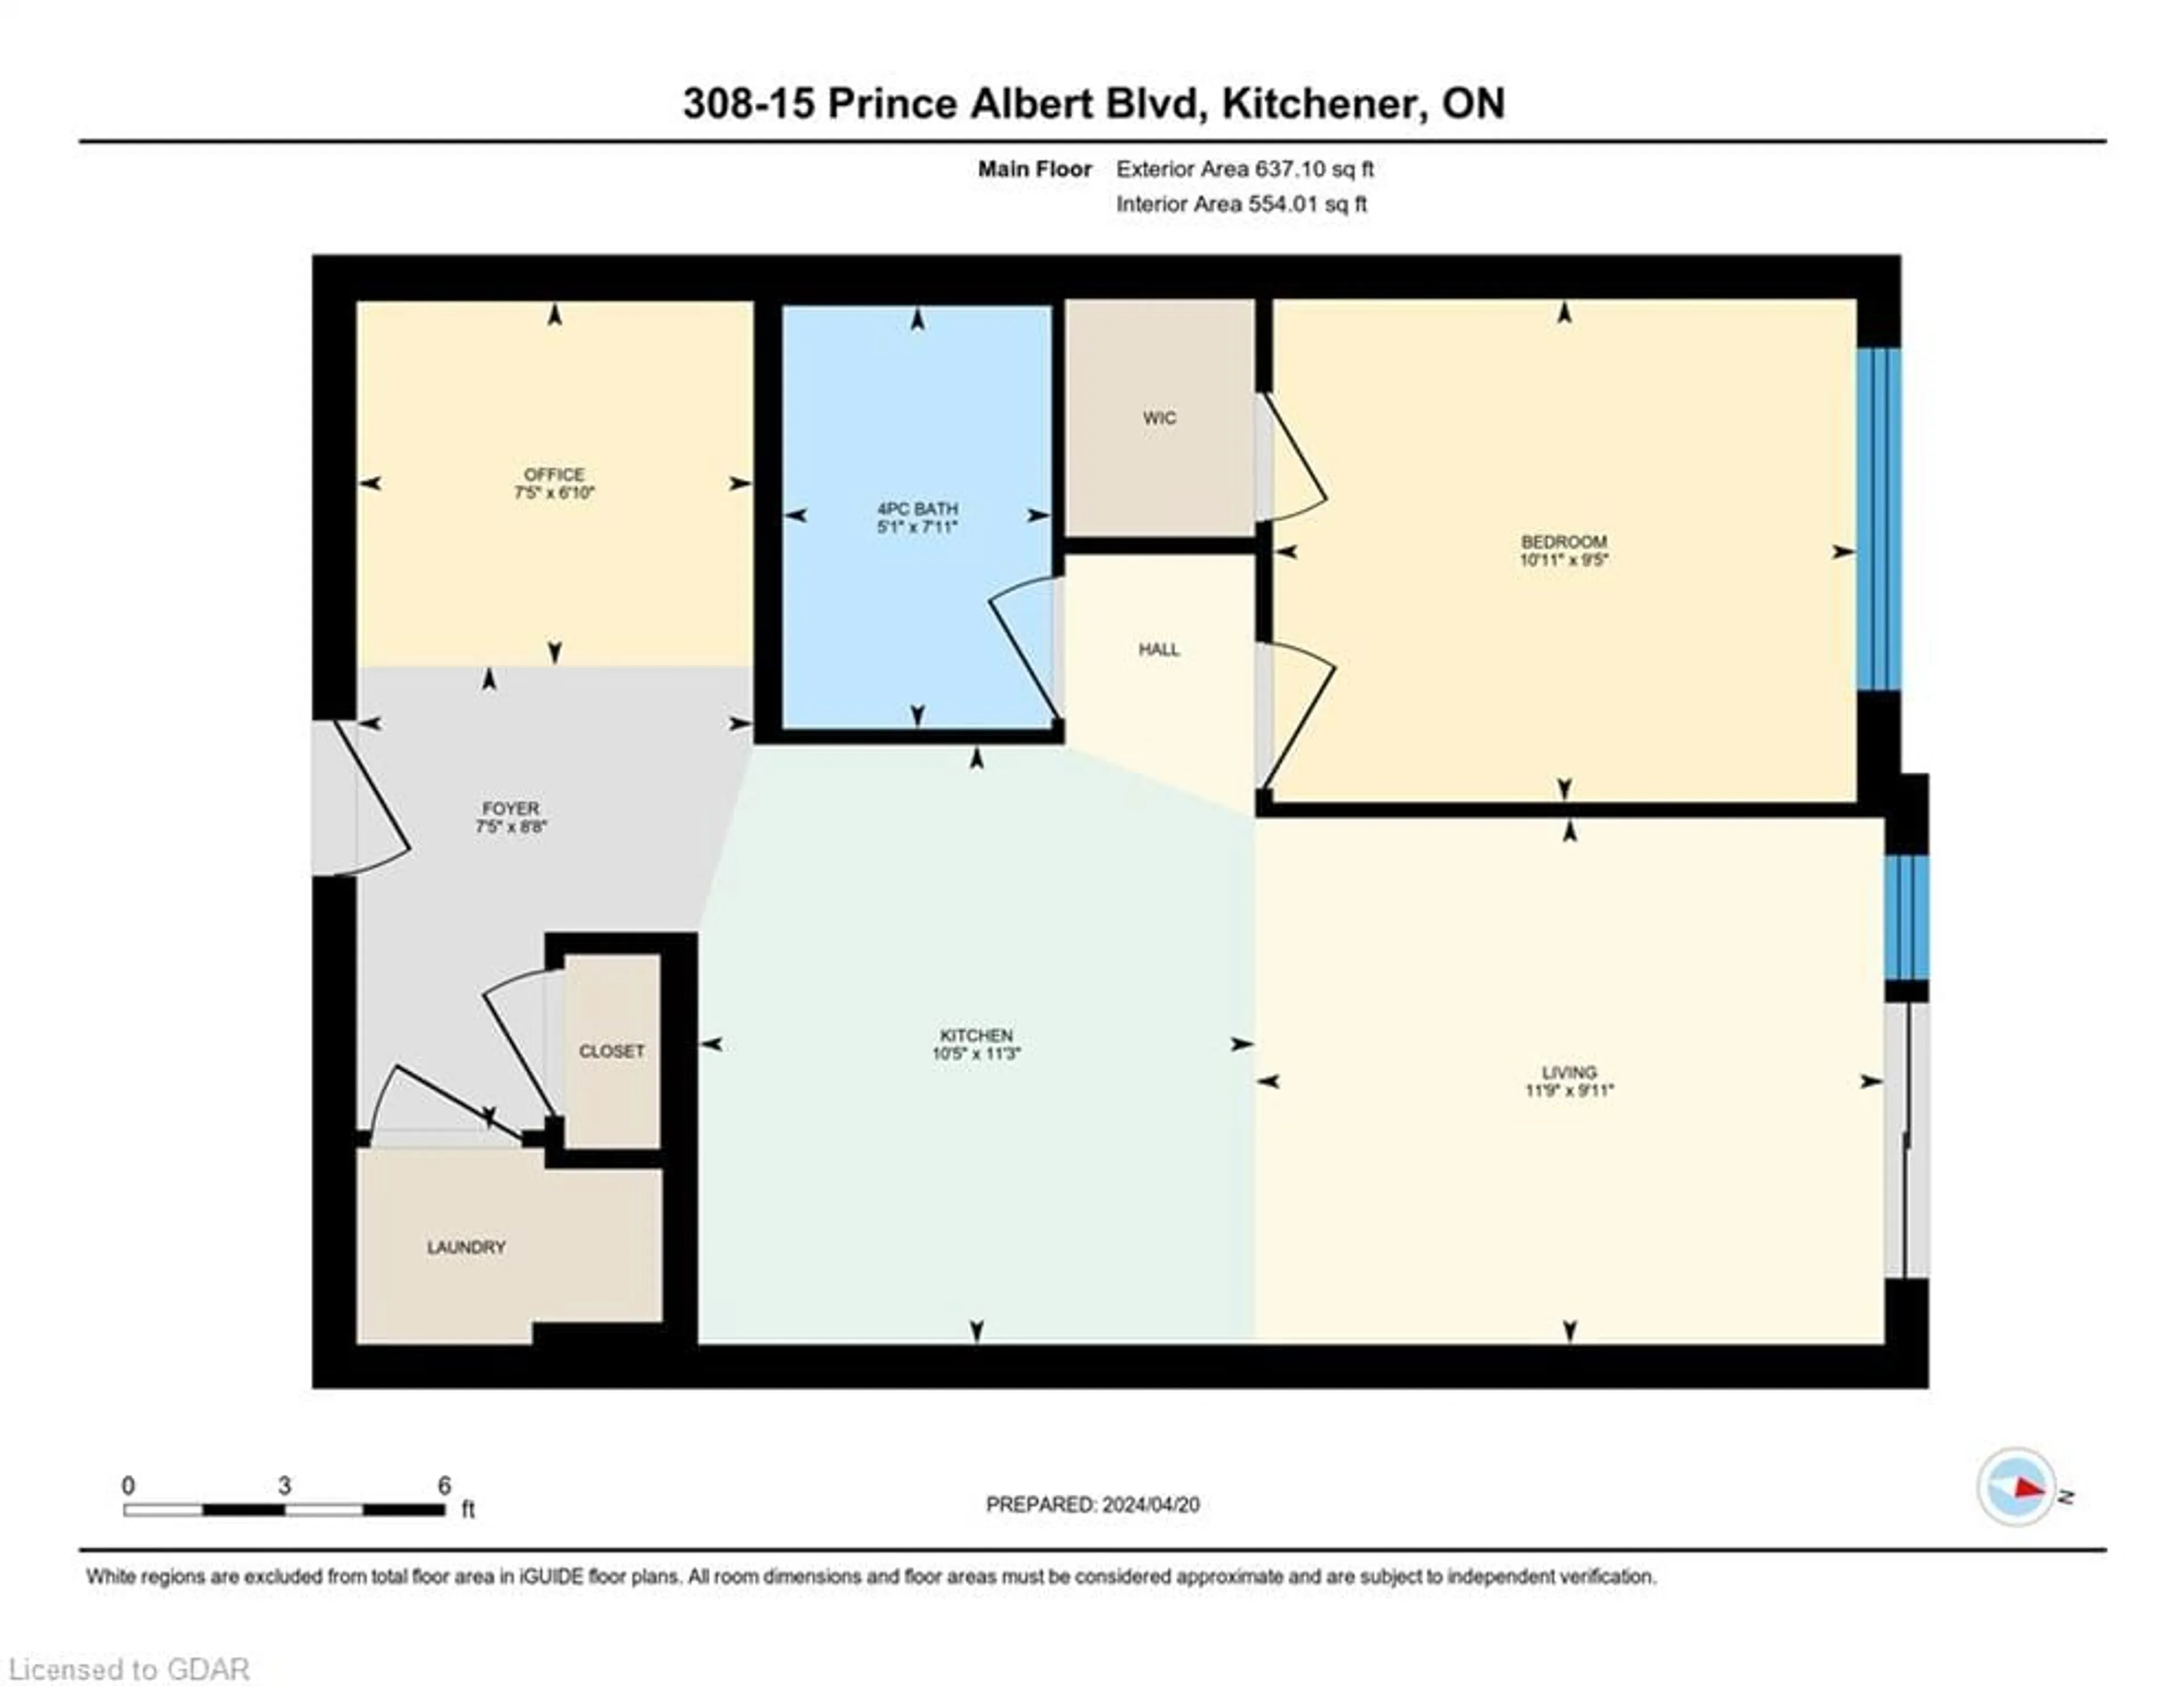 Floor plan for 15 Prince Albert Blvd #308, Kitchener Ontario N2H 0C2